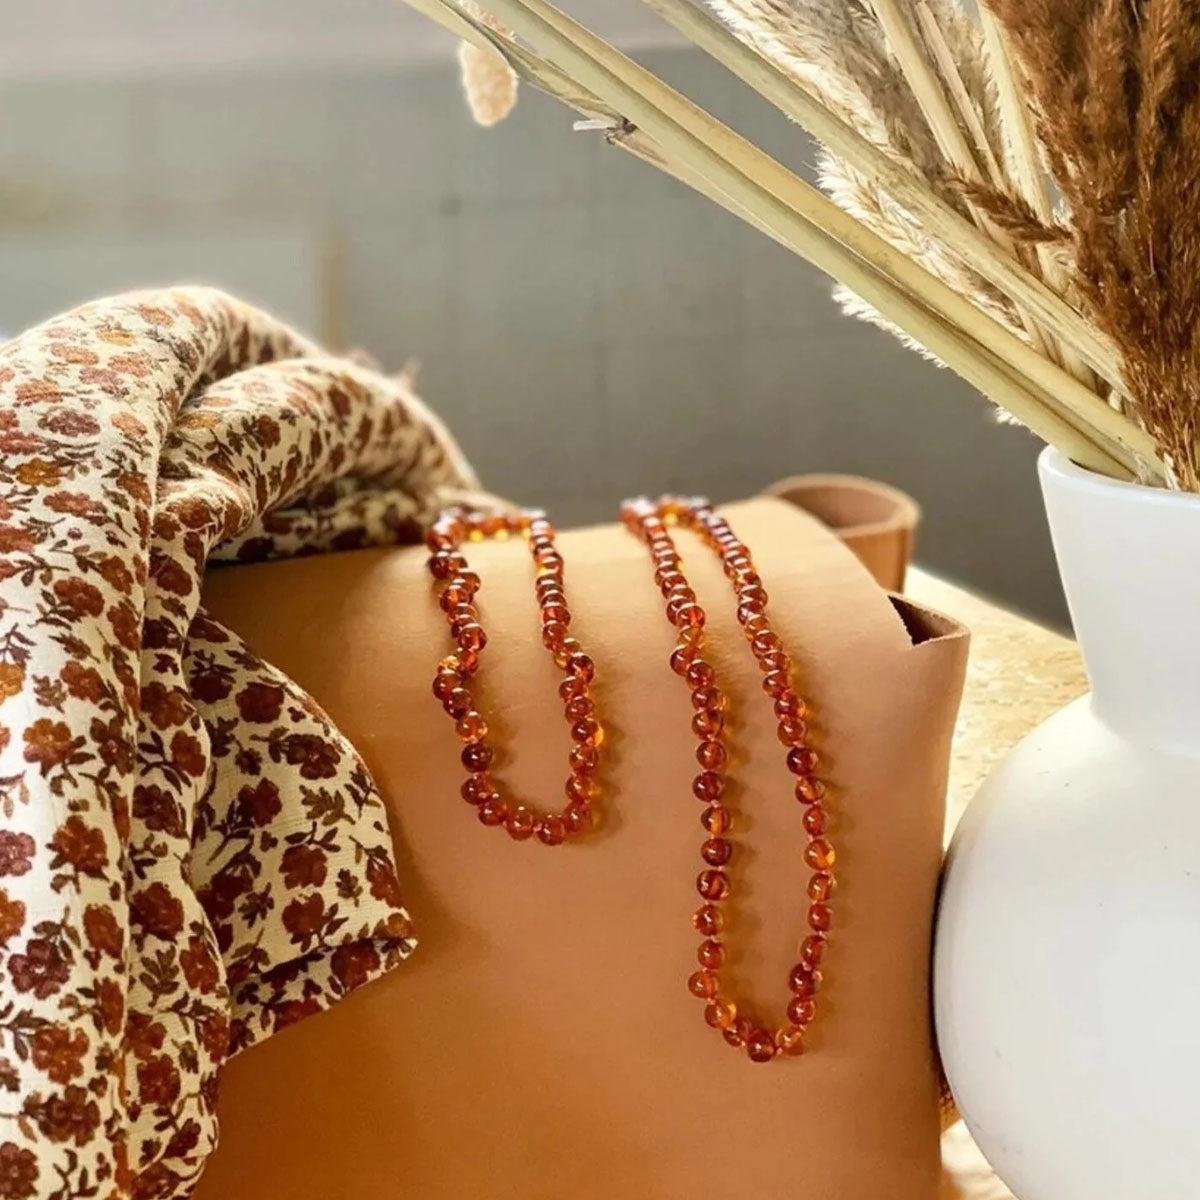 Een prachtig sieraad met positief effect: de balance amber mommy armband van Mahina La. Gemaakt van gepolijst amber barnstenen met een holistische verlichting van pijn en kalmerende werking. Hip en positief. VanZus